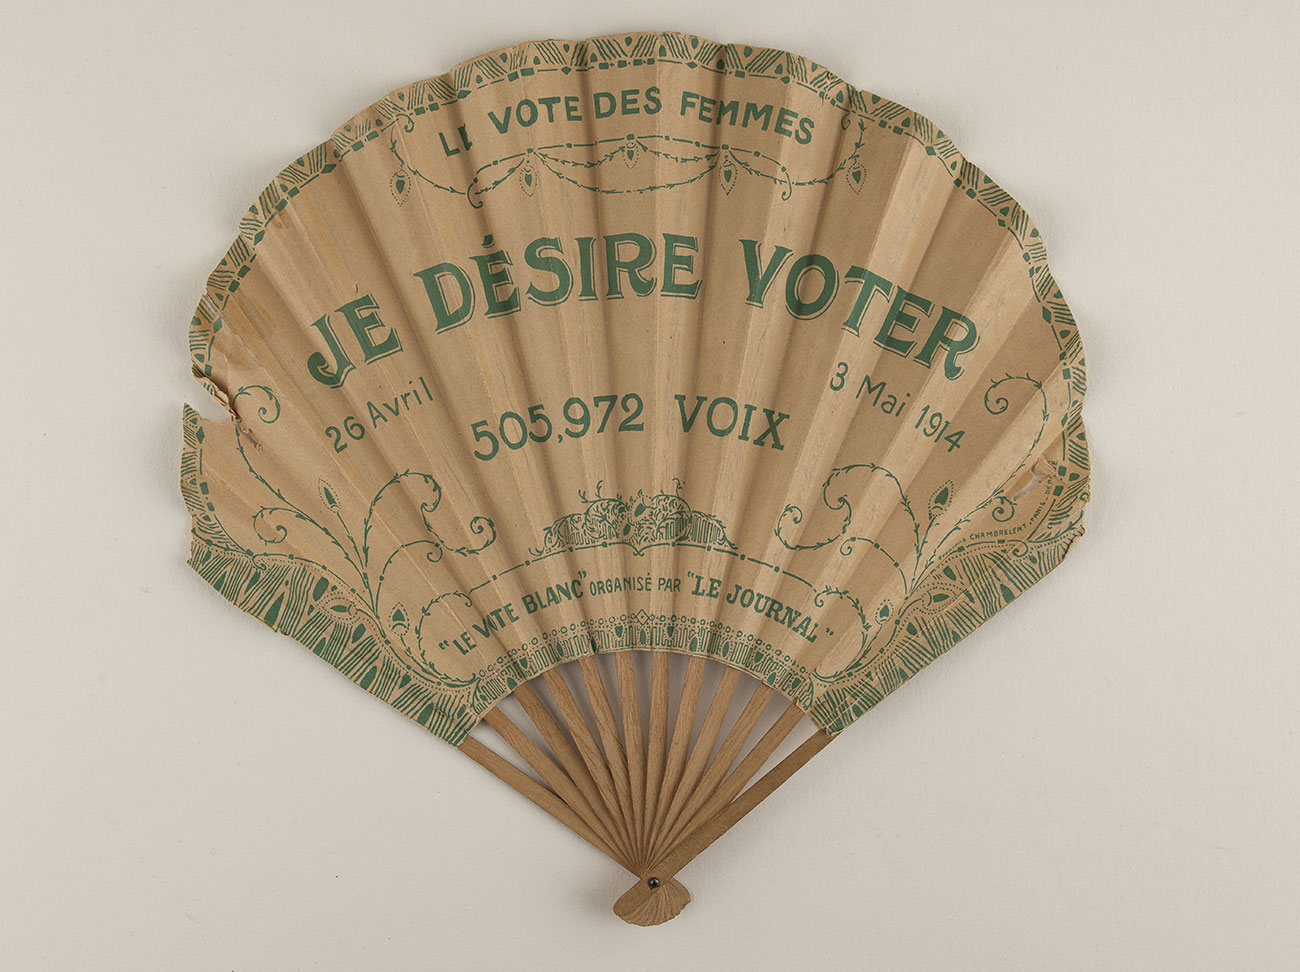 Éventail de suffragette. 1914. Paris, Bibliothèque Marguerite Durand © Bibliothèque Marguerite Durand / Roger-Viollet